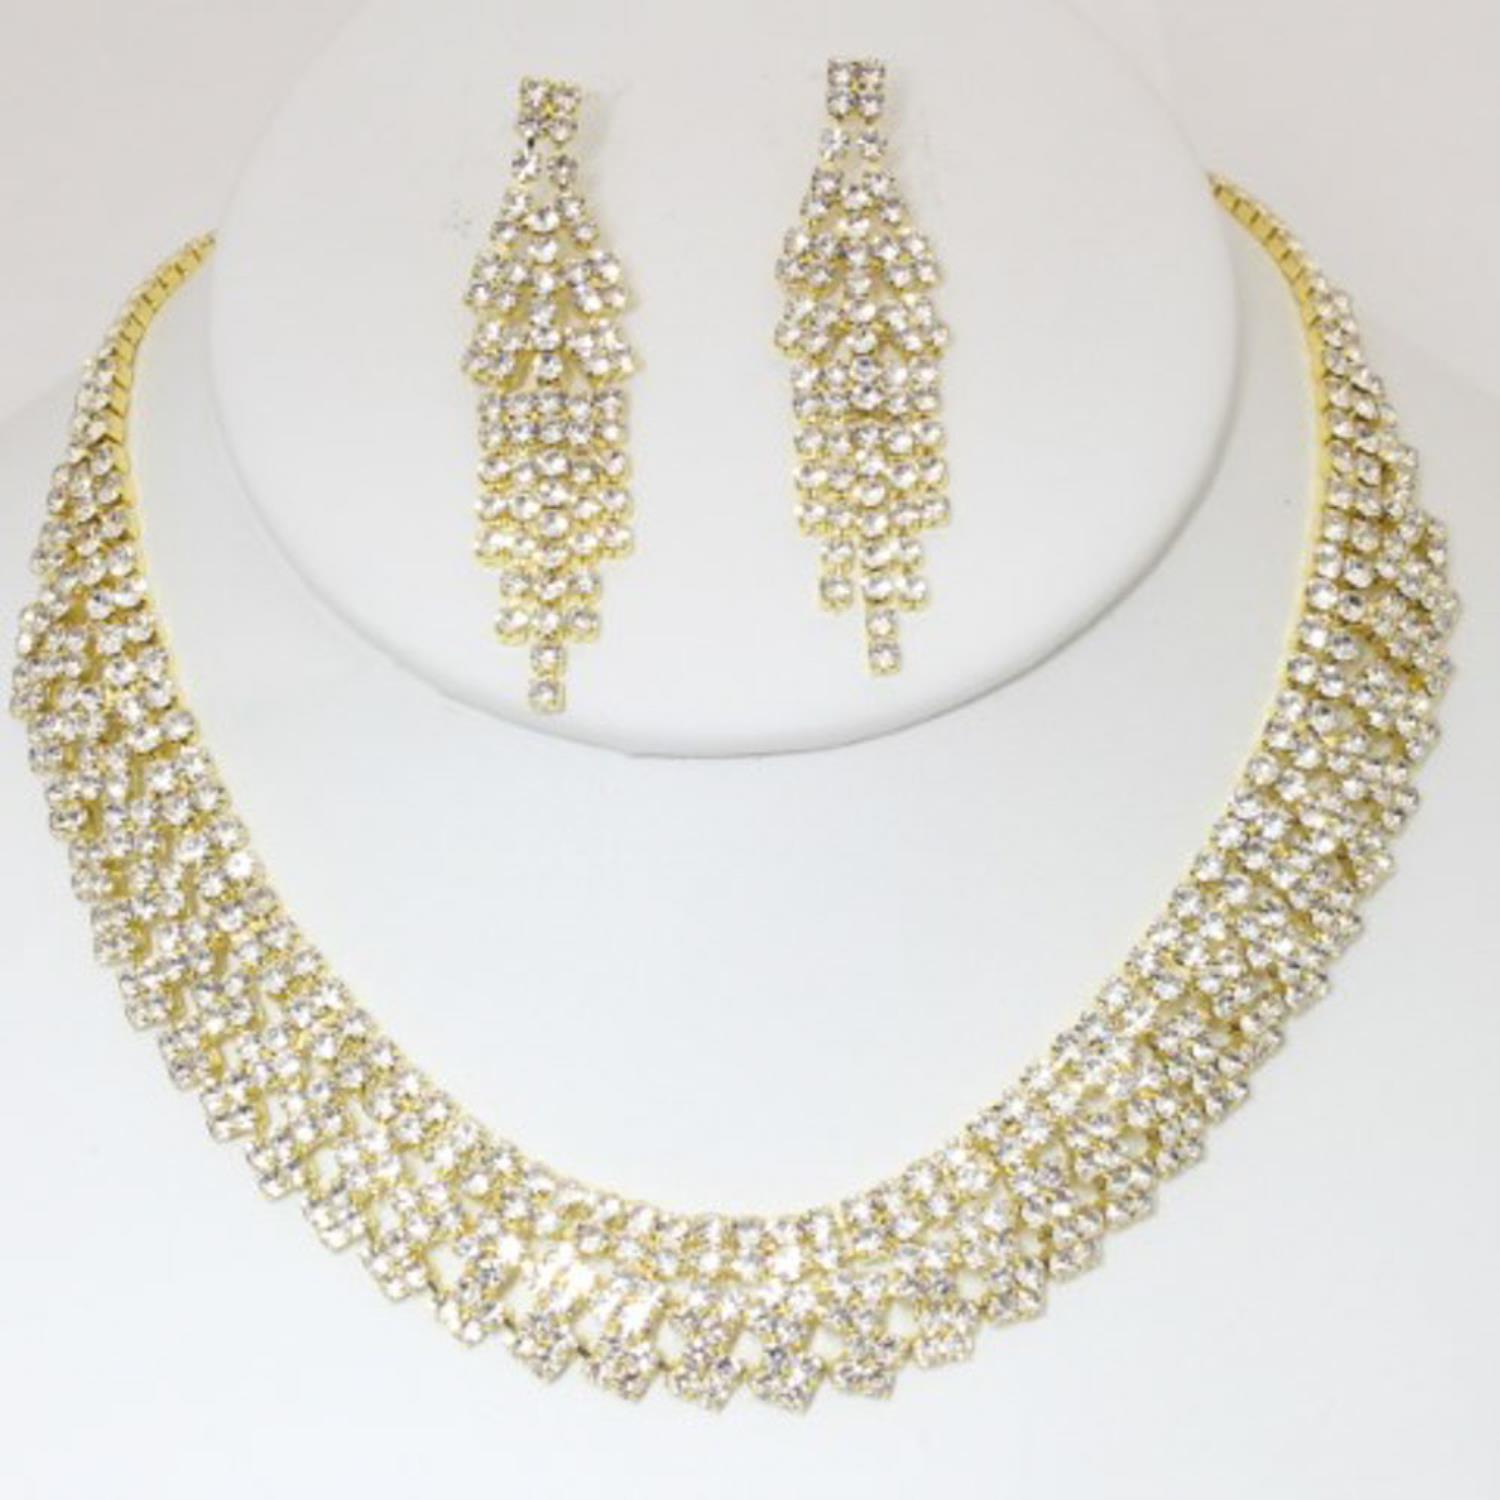 Rhinestone Necklace Earring Set - TiffanyzKlozet